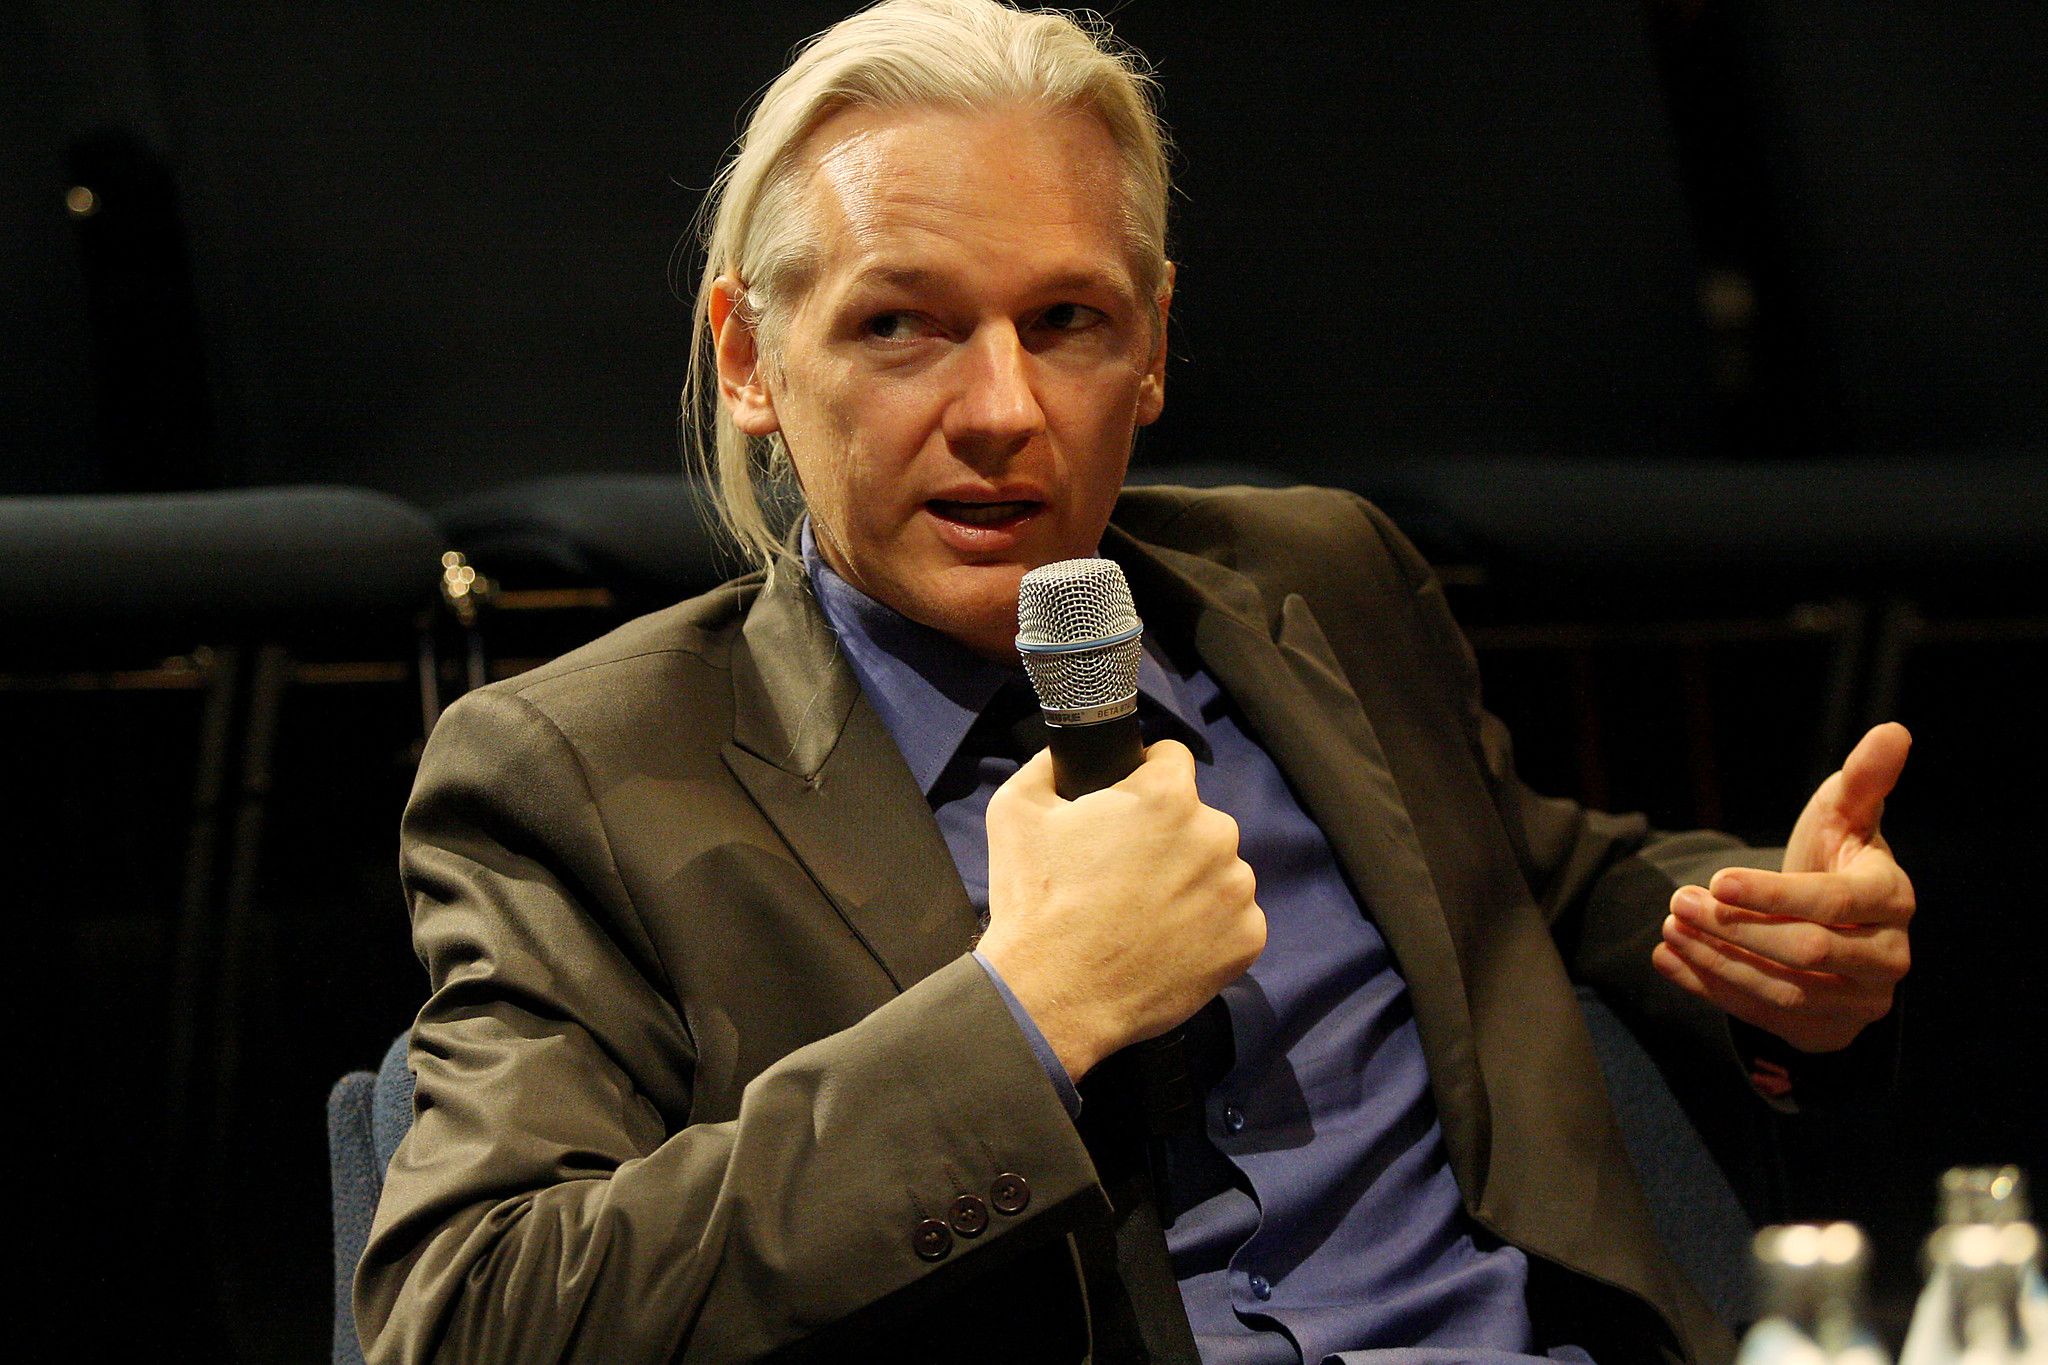 Засновника Wikileaks Ассанжа позбавили громадянства Еквадору